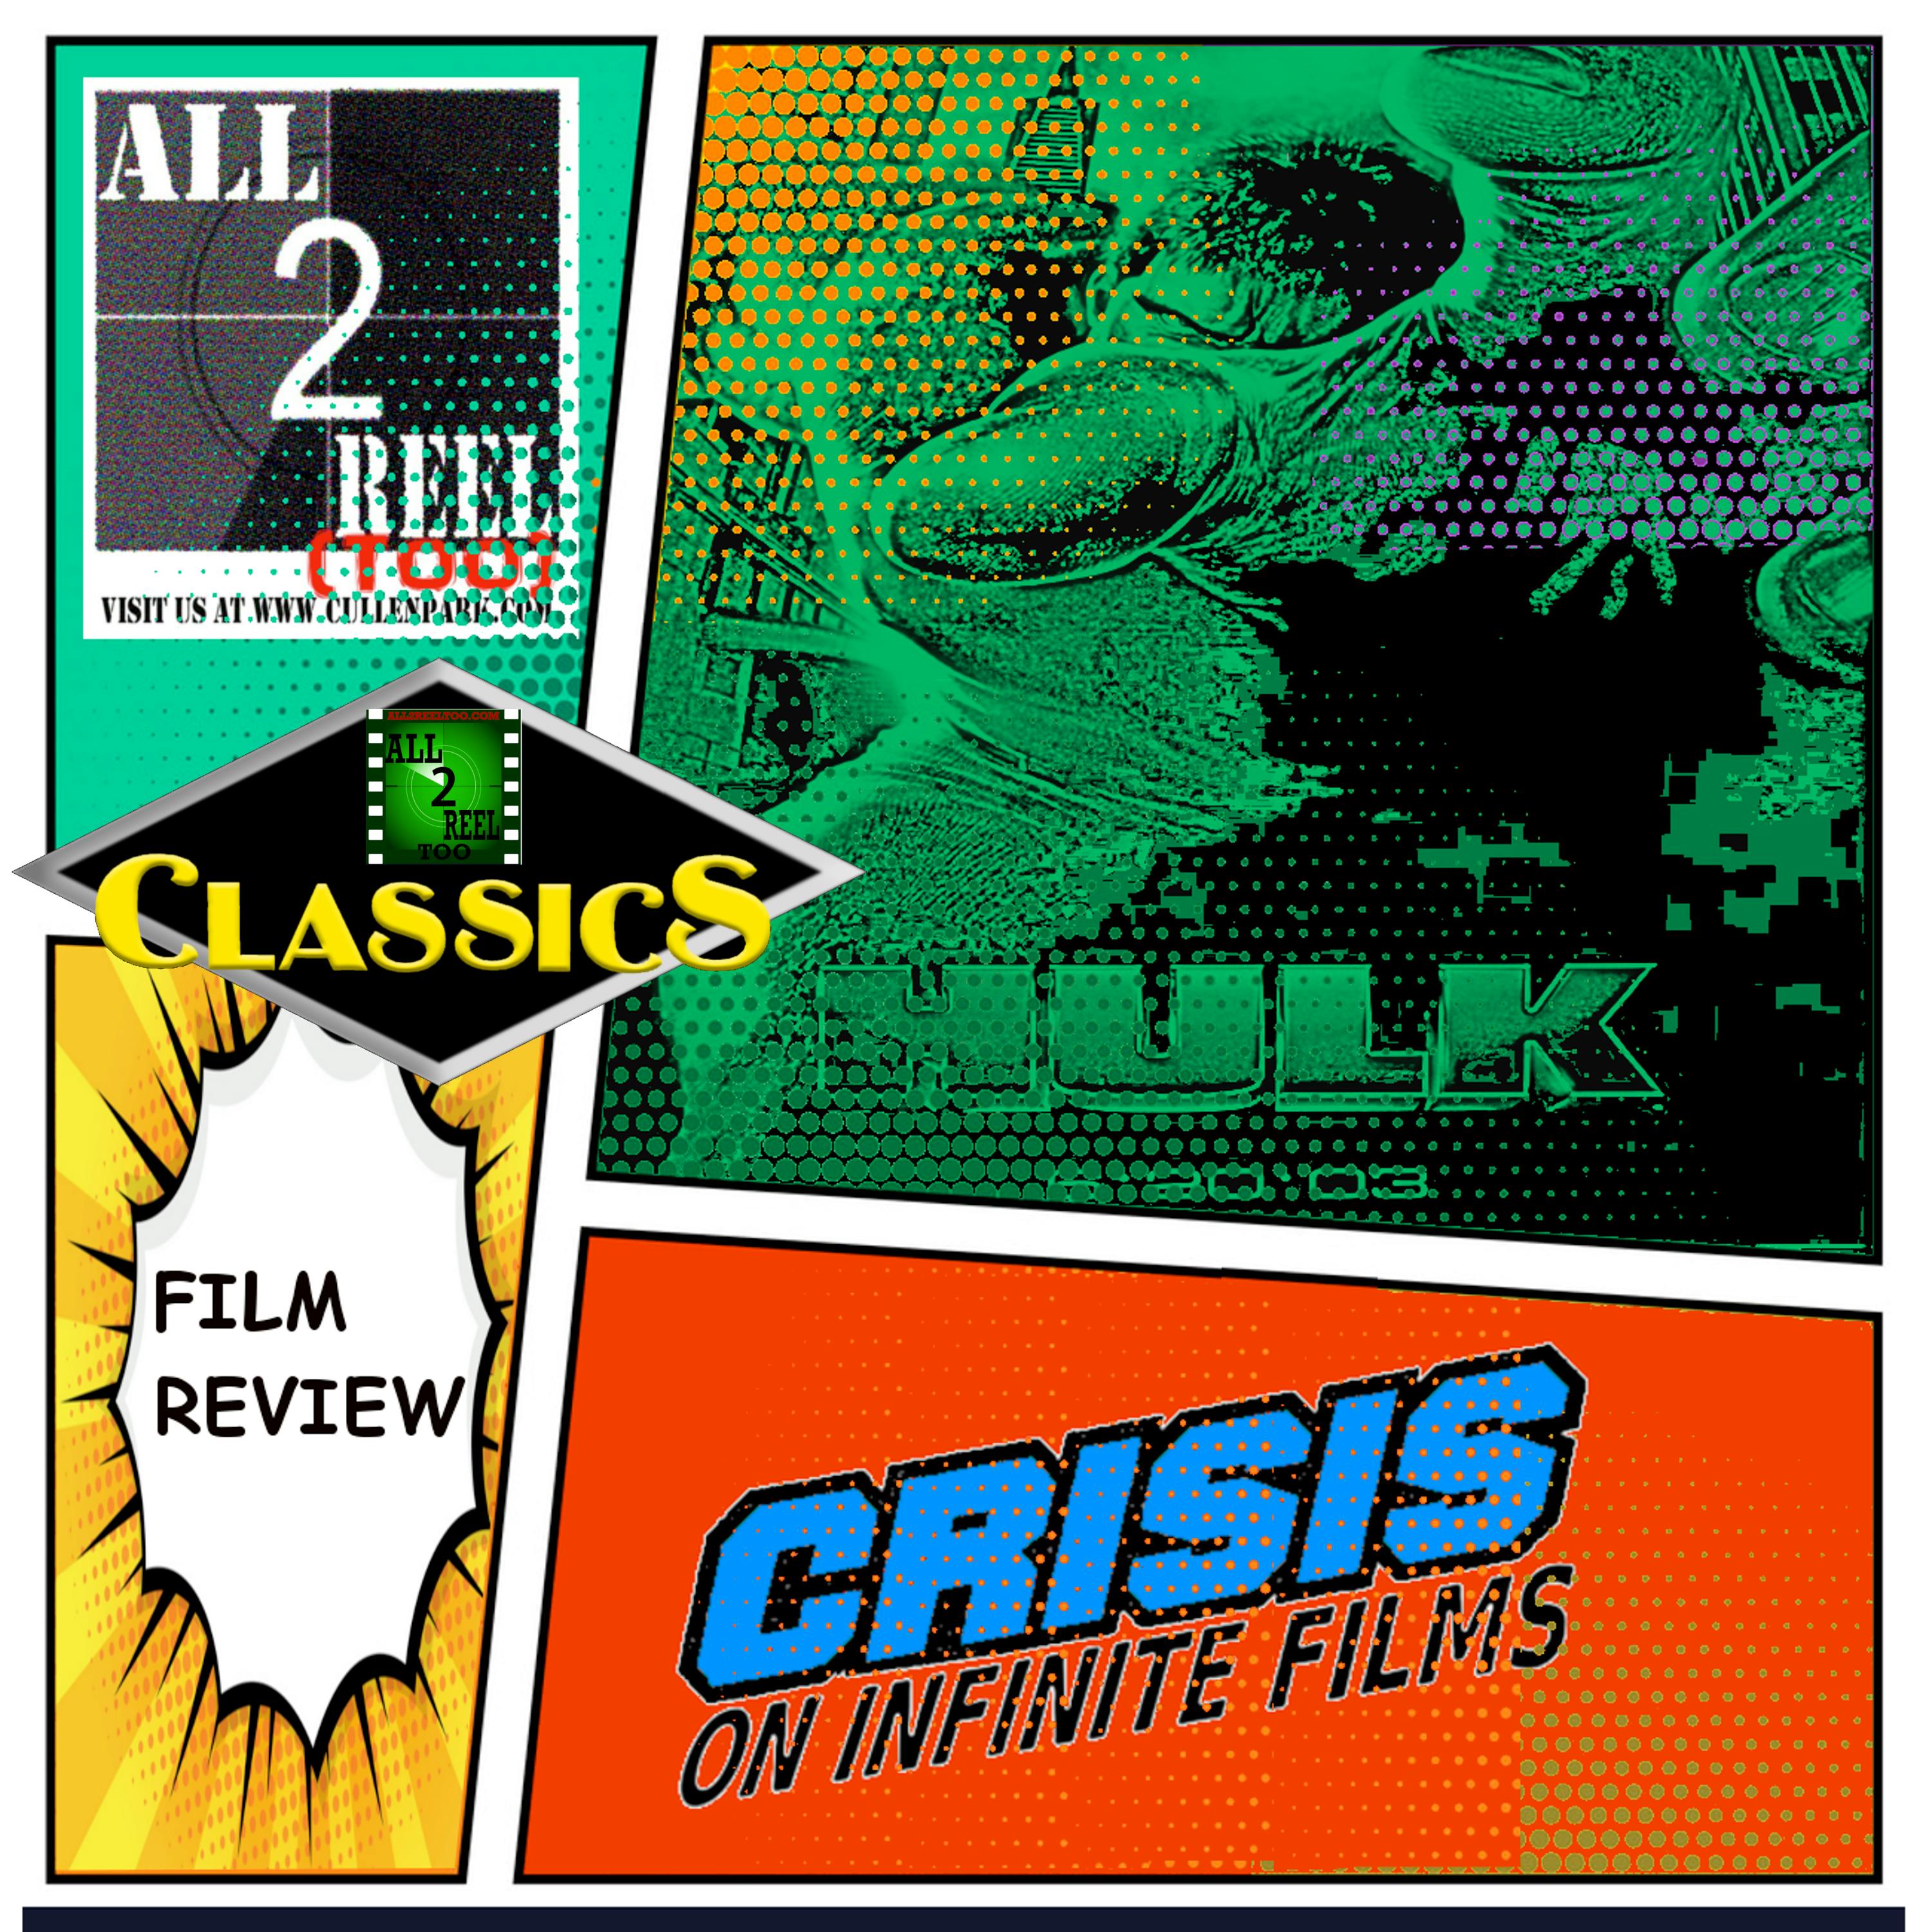 ALL2REELTOO CLASSICS - Hulk (2003)-Crisis On Infinite Films Image